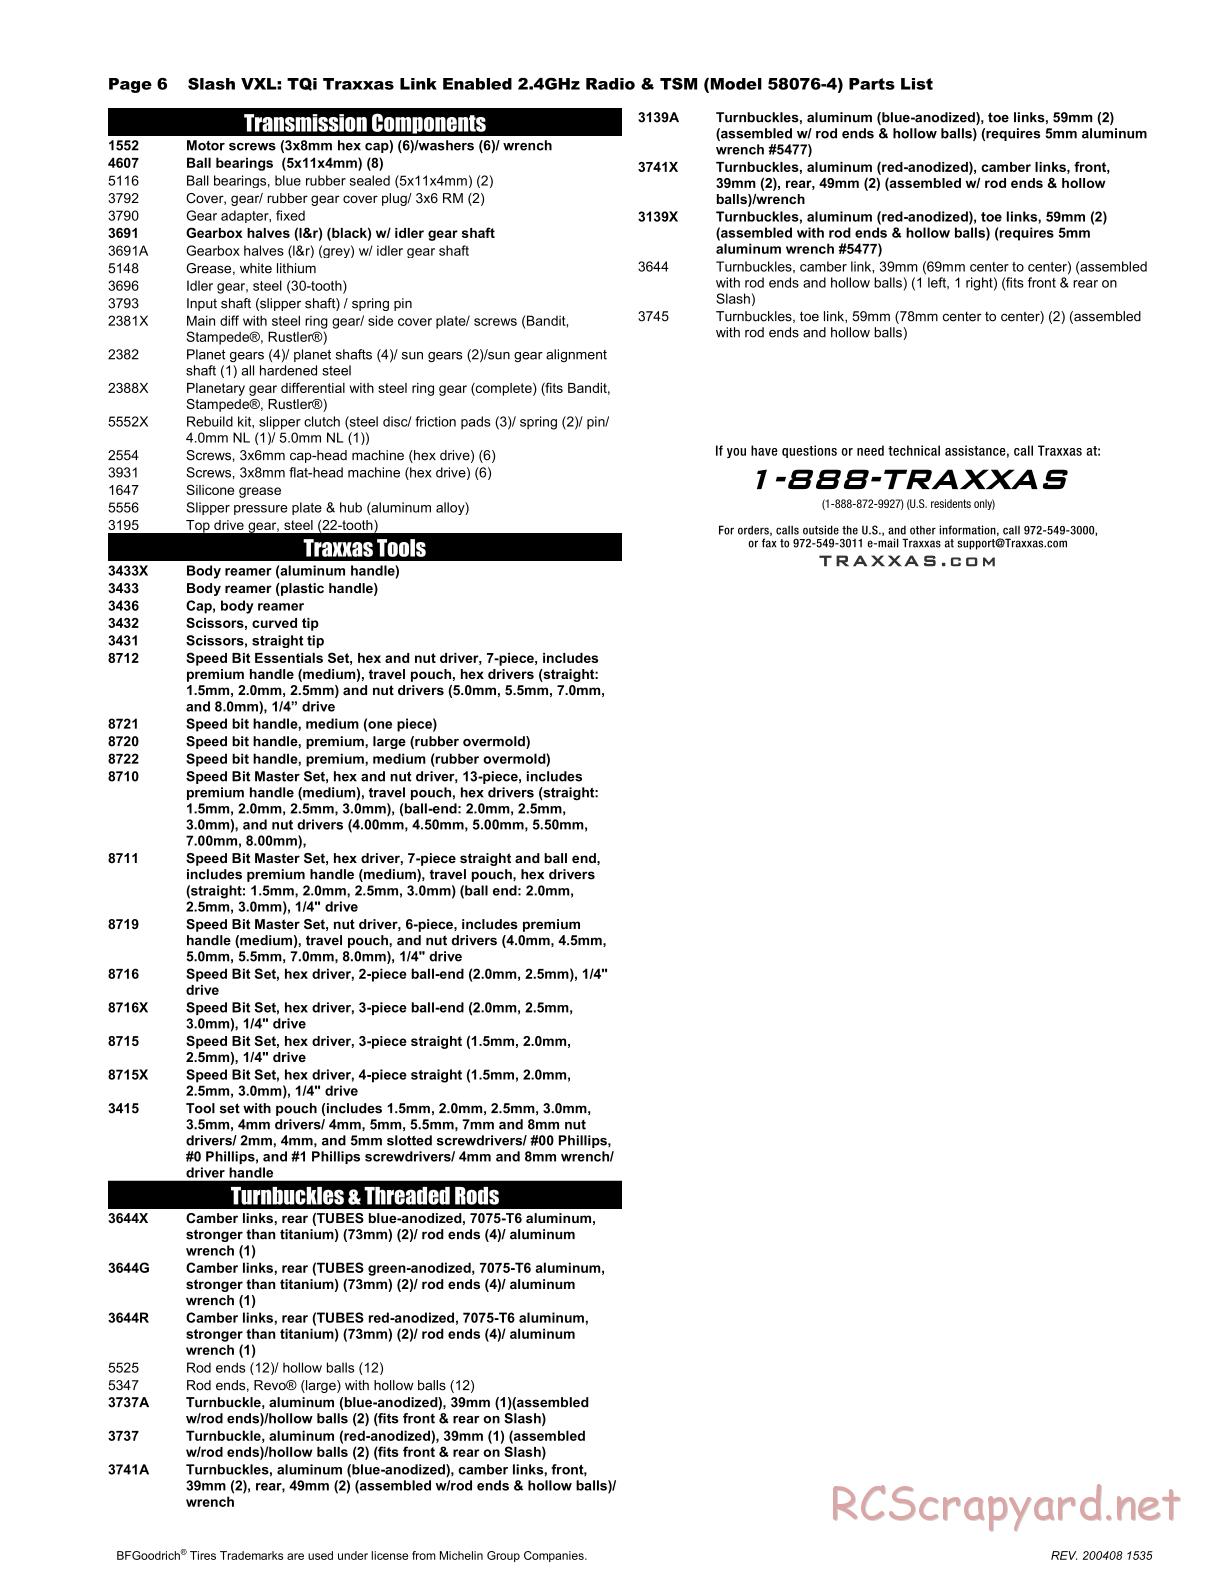 Traxxas - Slash VXL TSM 2WD - Parts List - Page 6